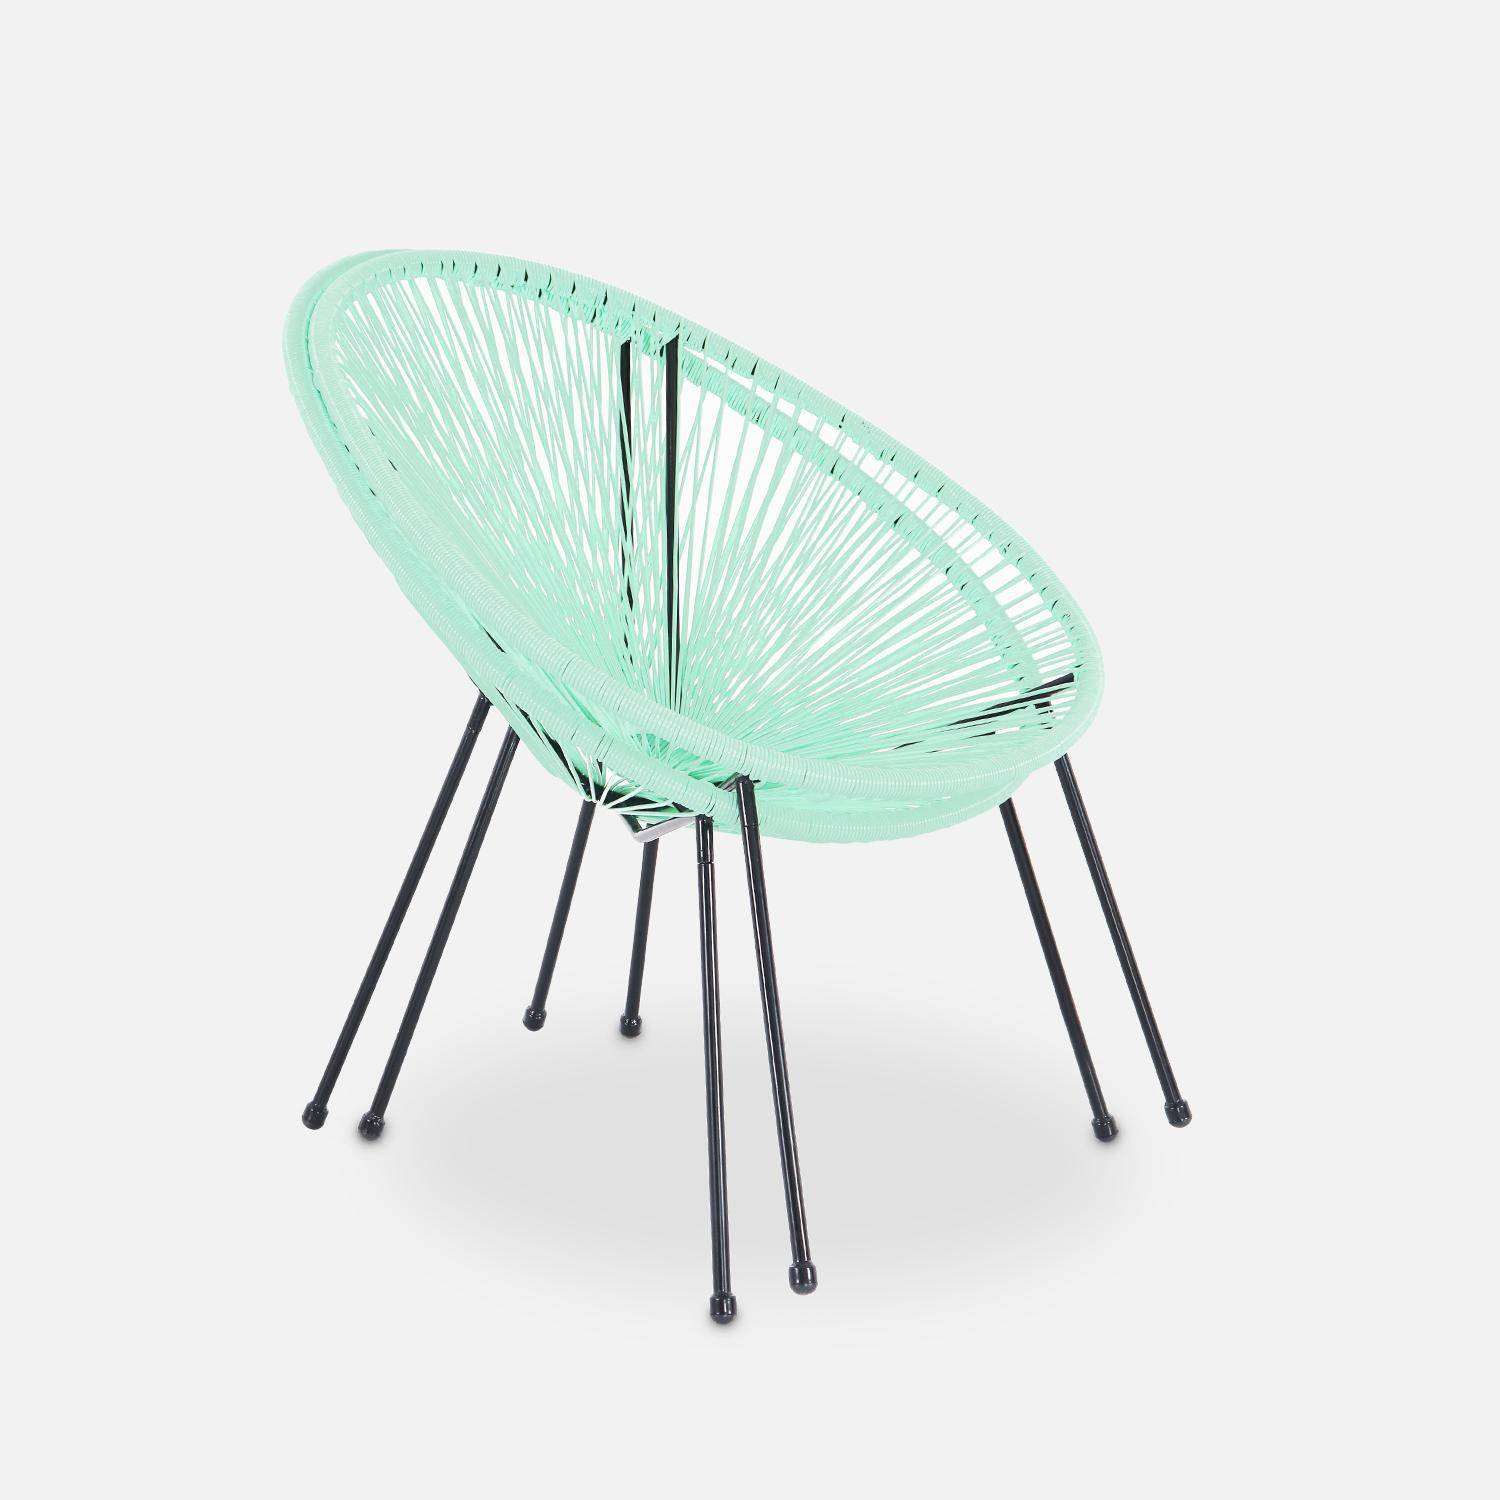 Set van 2 design stoelen ei-vormig - Acapulco Watergroen  - Stoelen 4 poten retro design, plastic koorden, binnen/buiten Photo5